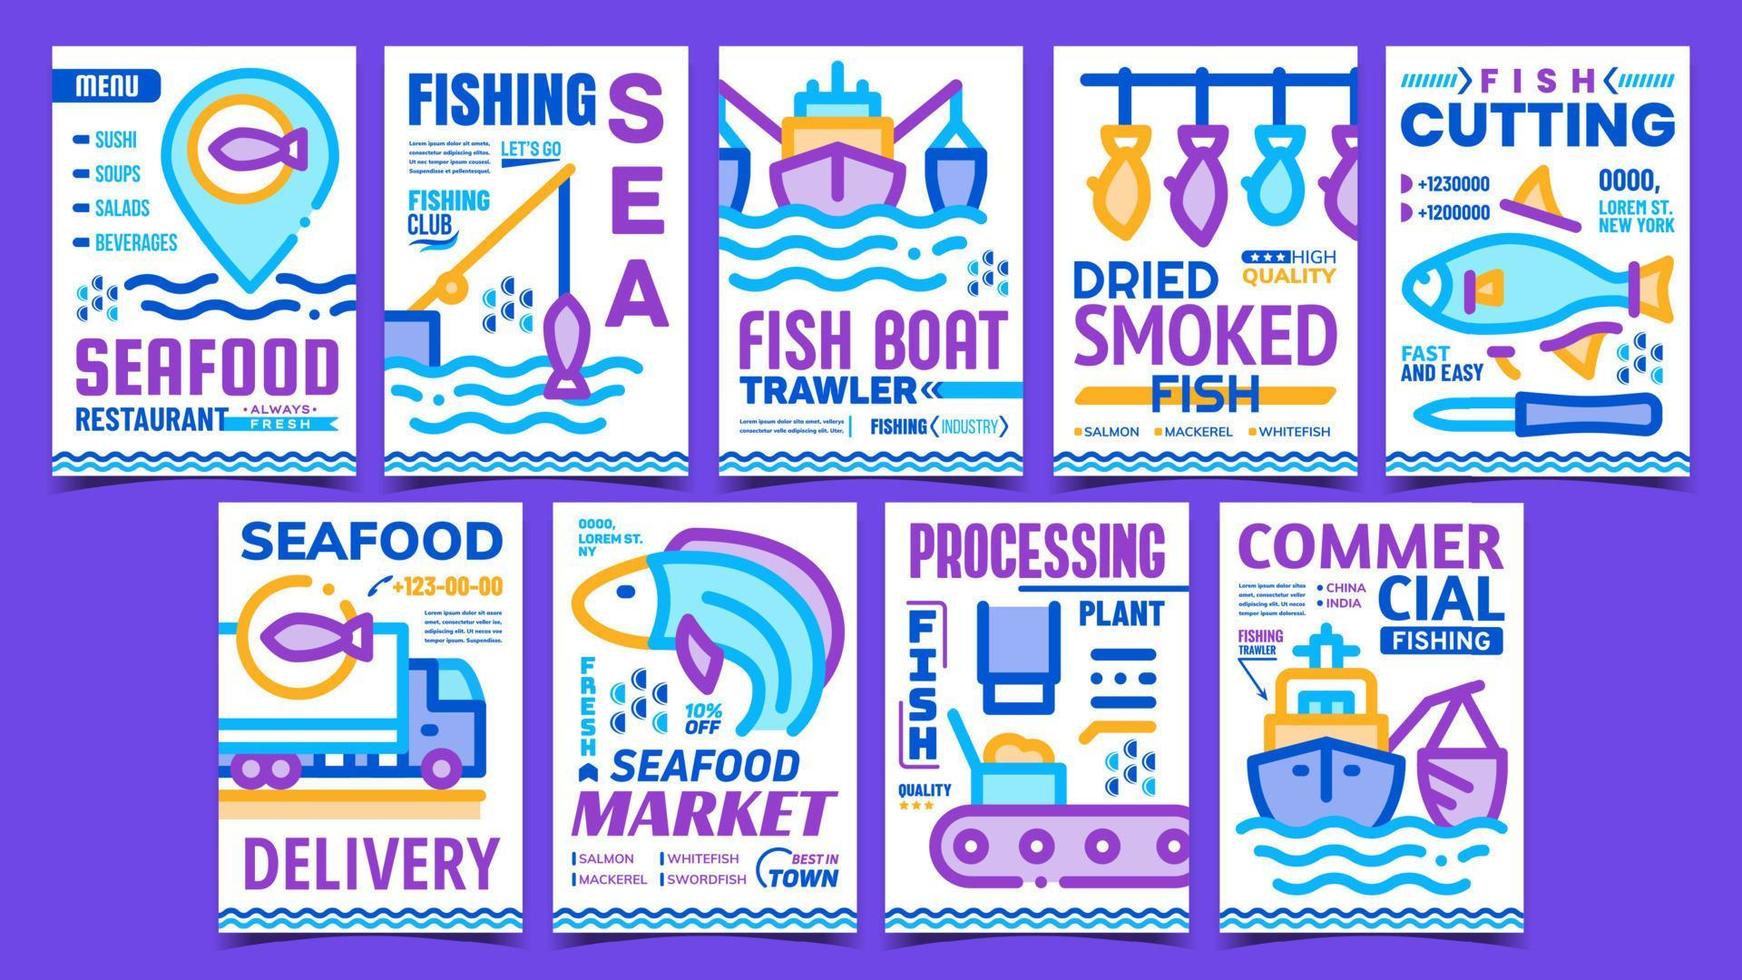 vecteur d'affiches publicitaires de l'industrie de la pêche